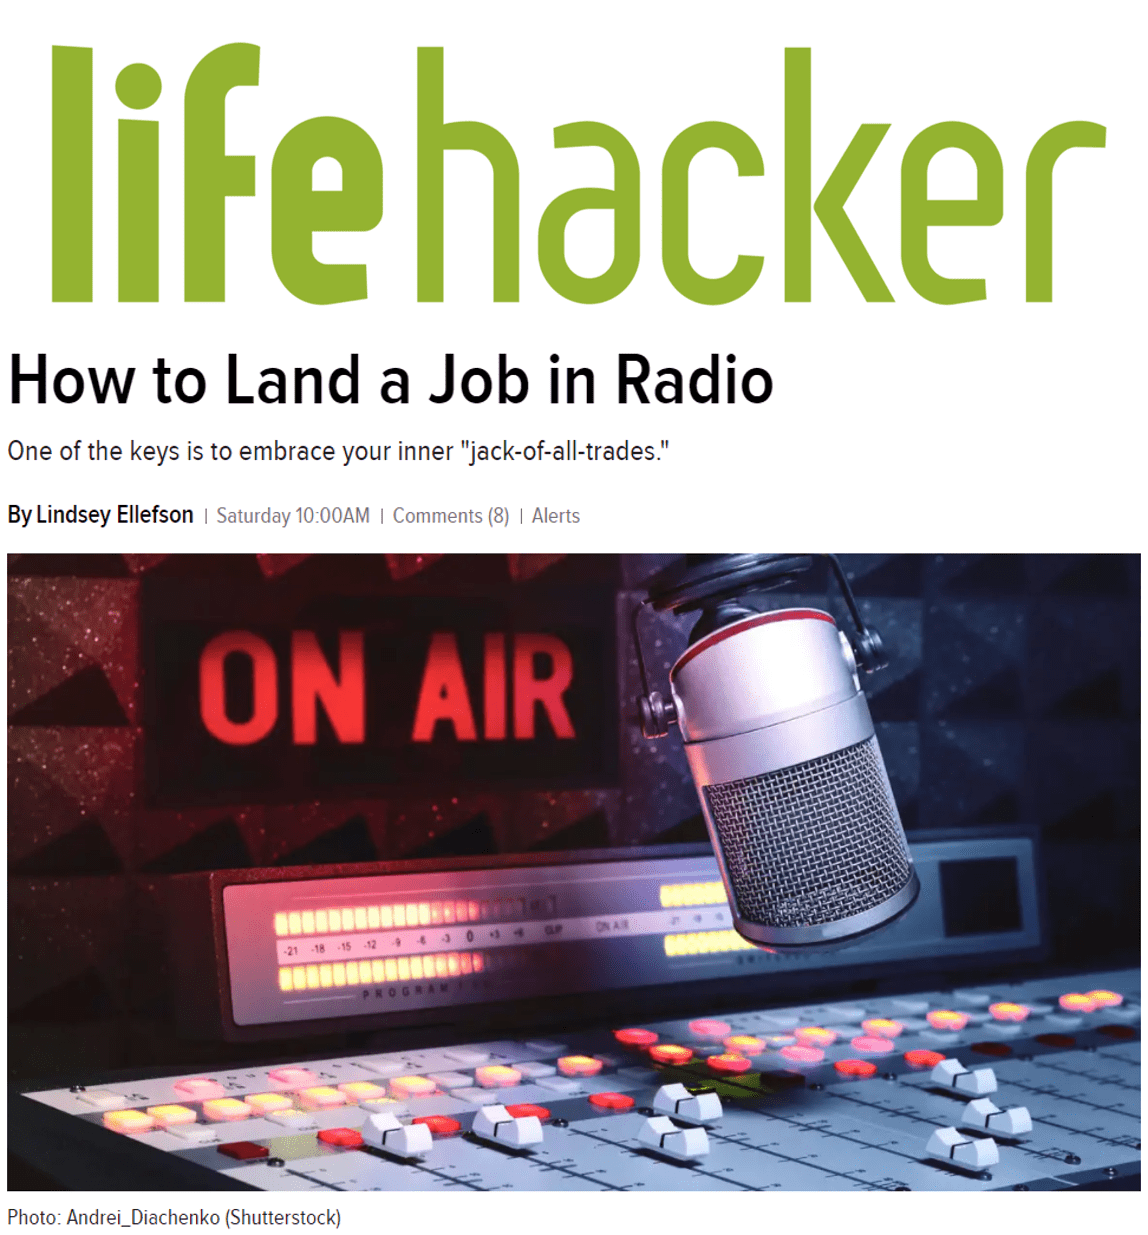 Wonderbaarlijk trimmen Harden lifehacker radio job headline - Jacobs Media Strategies